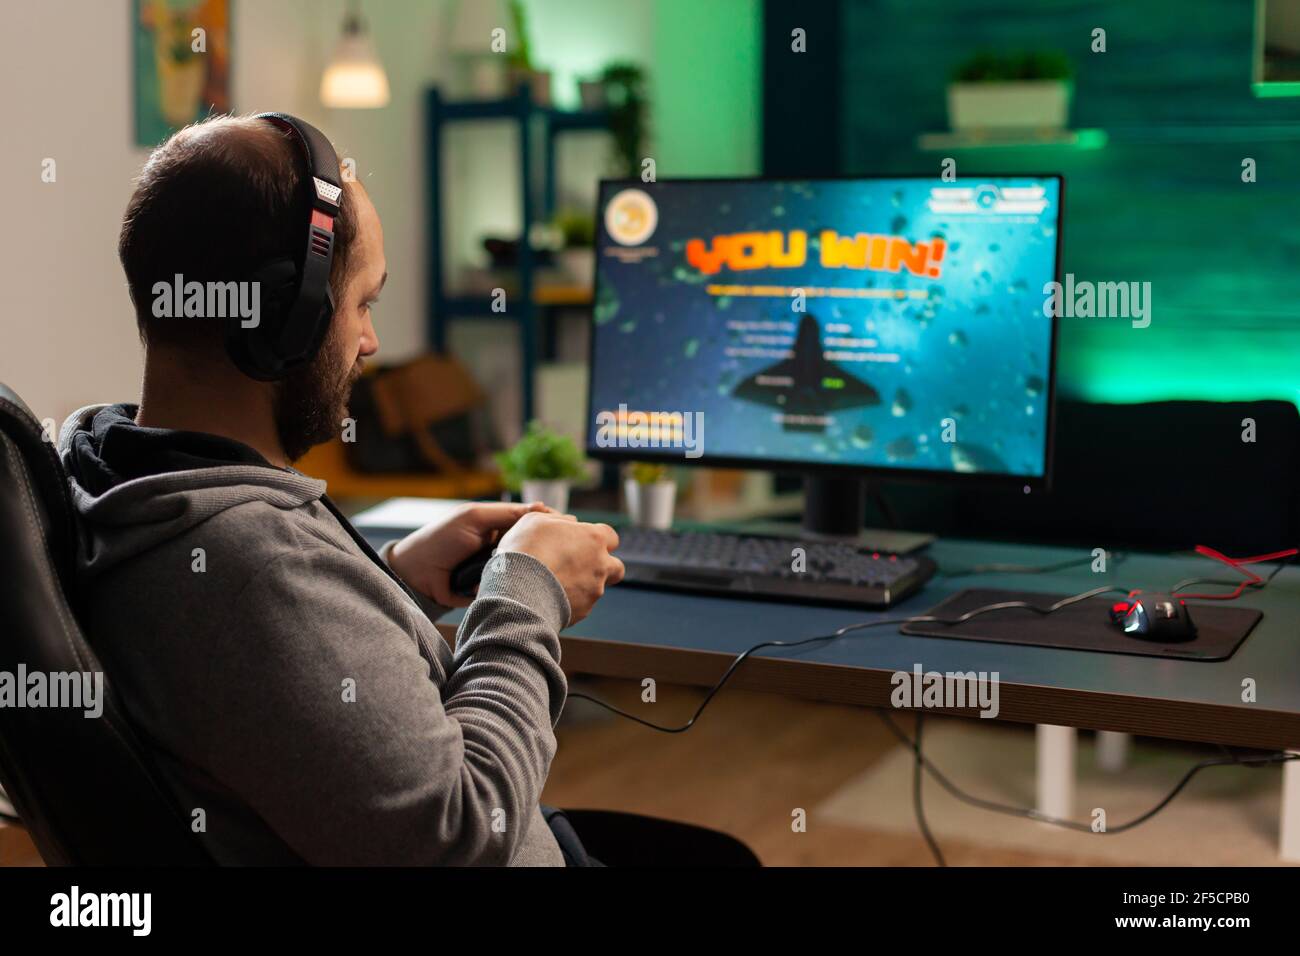 Foto de fondo de un jugador profesional jugando juego de disparos en línea en el ordenador utilizando mando inalámbrico. El jugador competitivo que torneo de videojuegos utiliza equipo profesional